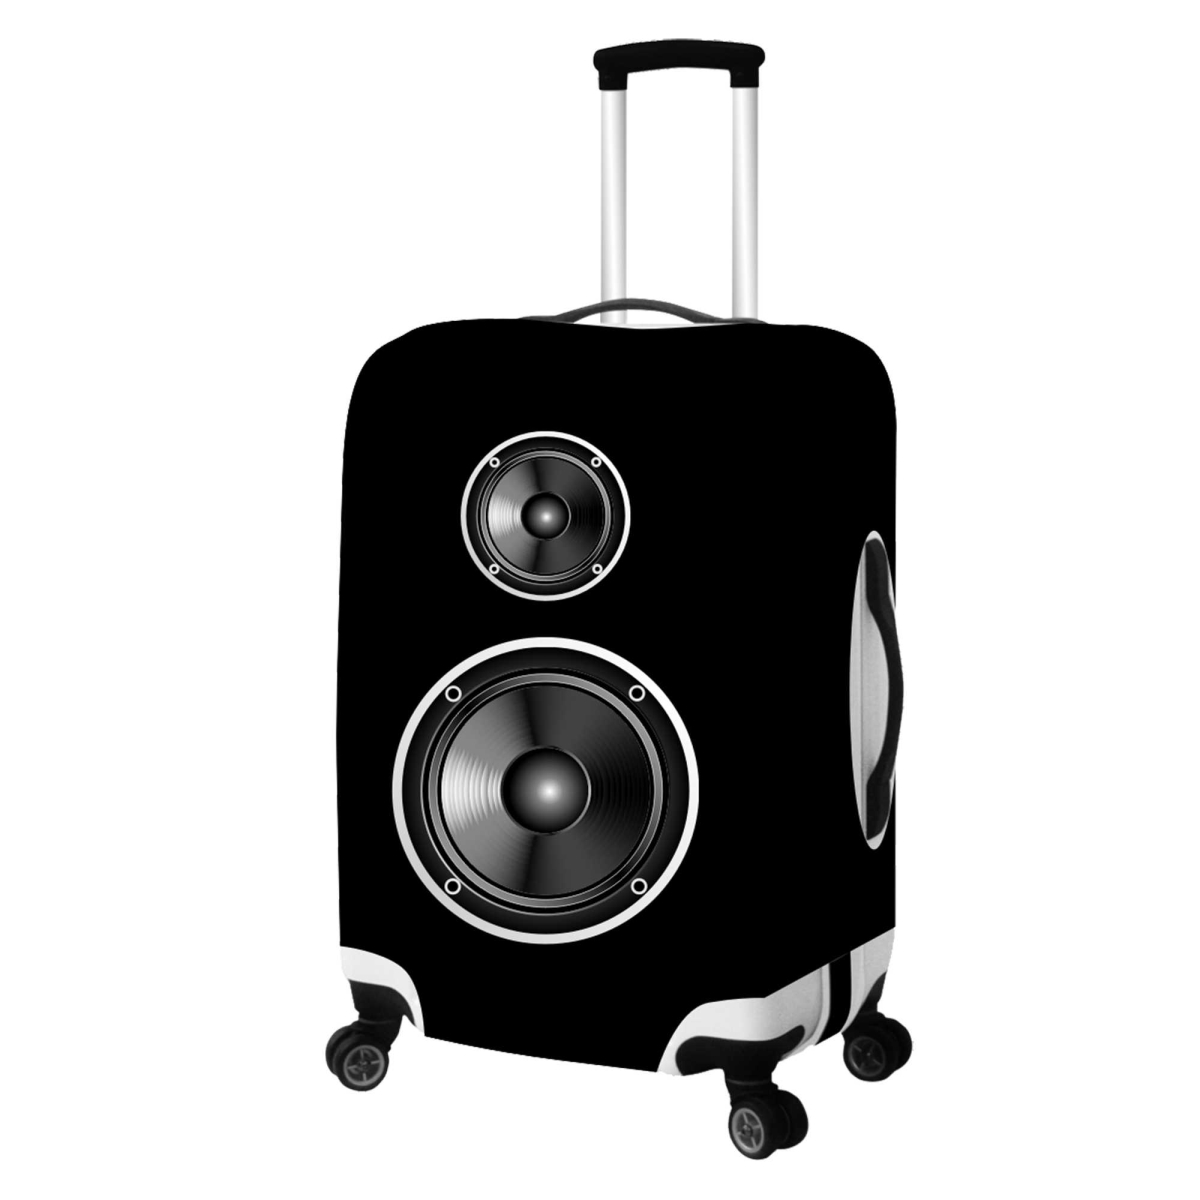 Speaker-primeware Luggage Cover - Small